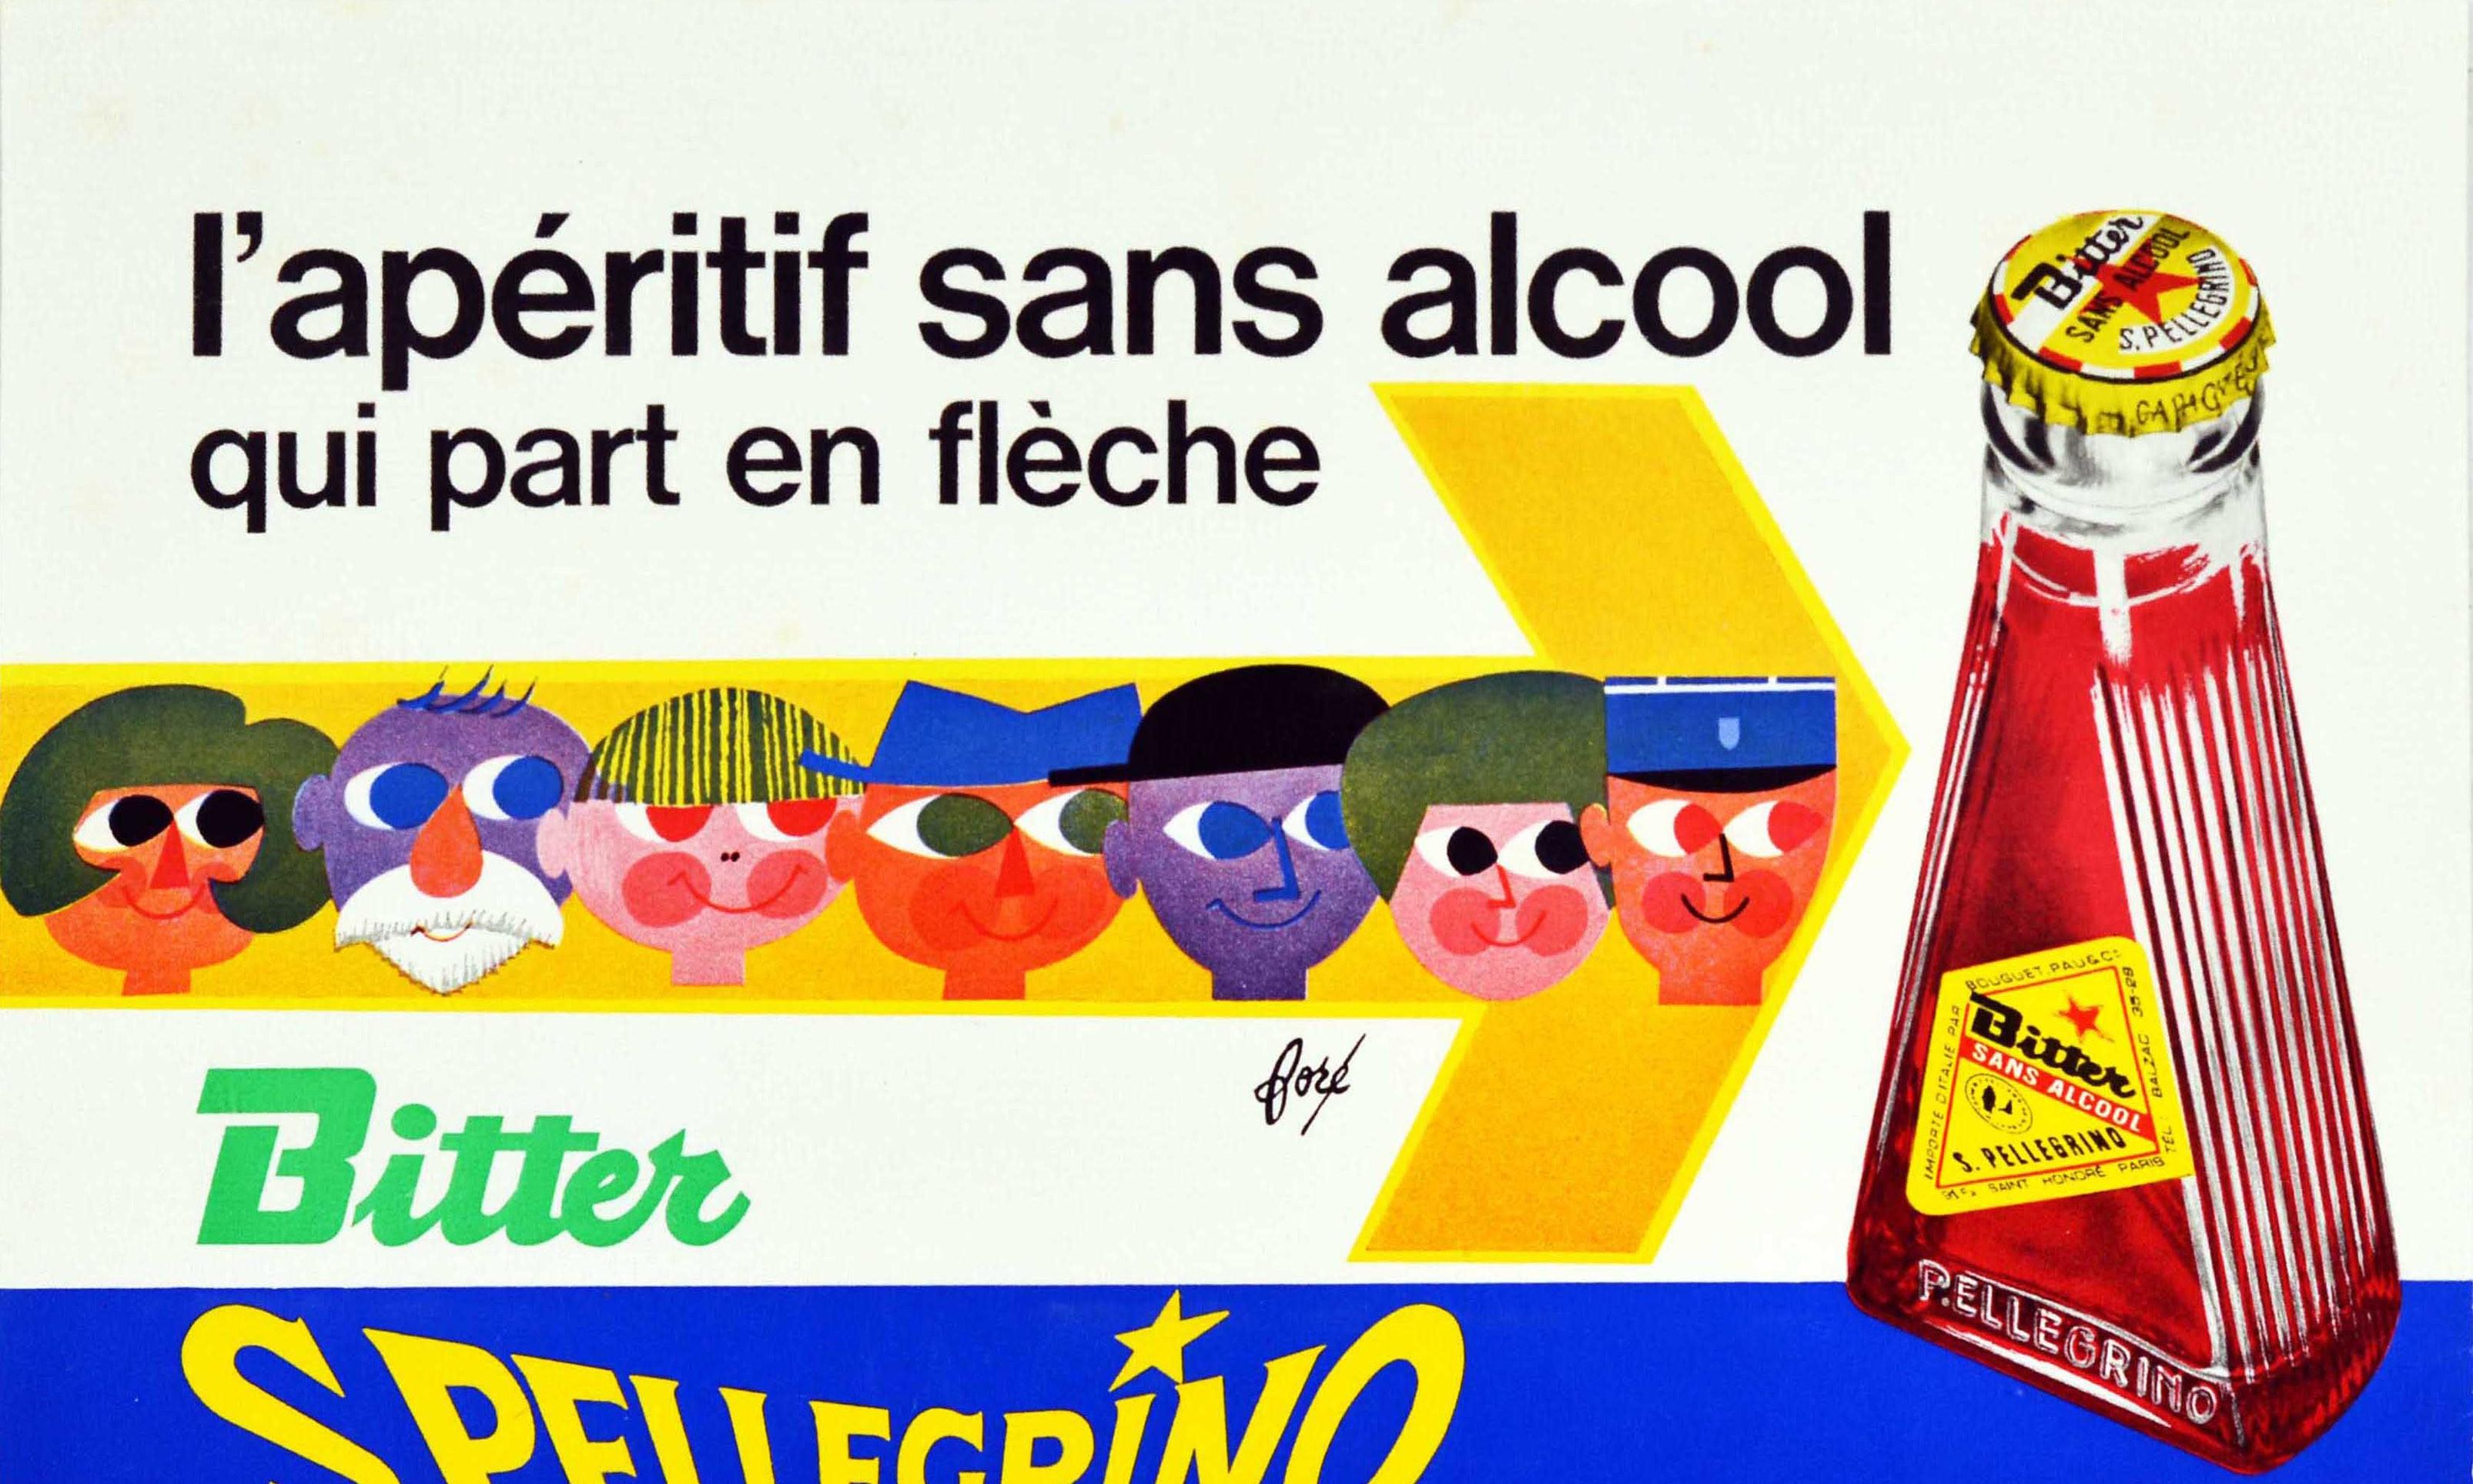 Affiche publicitaire originale pour la boisson San Pellegrino Bitter, l'apéritif sans alcool qui part en flèche, avec une image de visages colorés de style dessin animé sur une flèche jaune pointant vers la bouteille de boisson iconique avec le